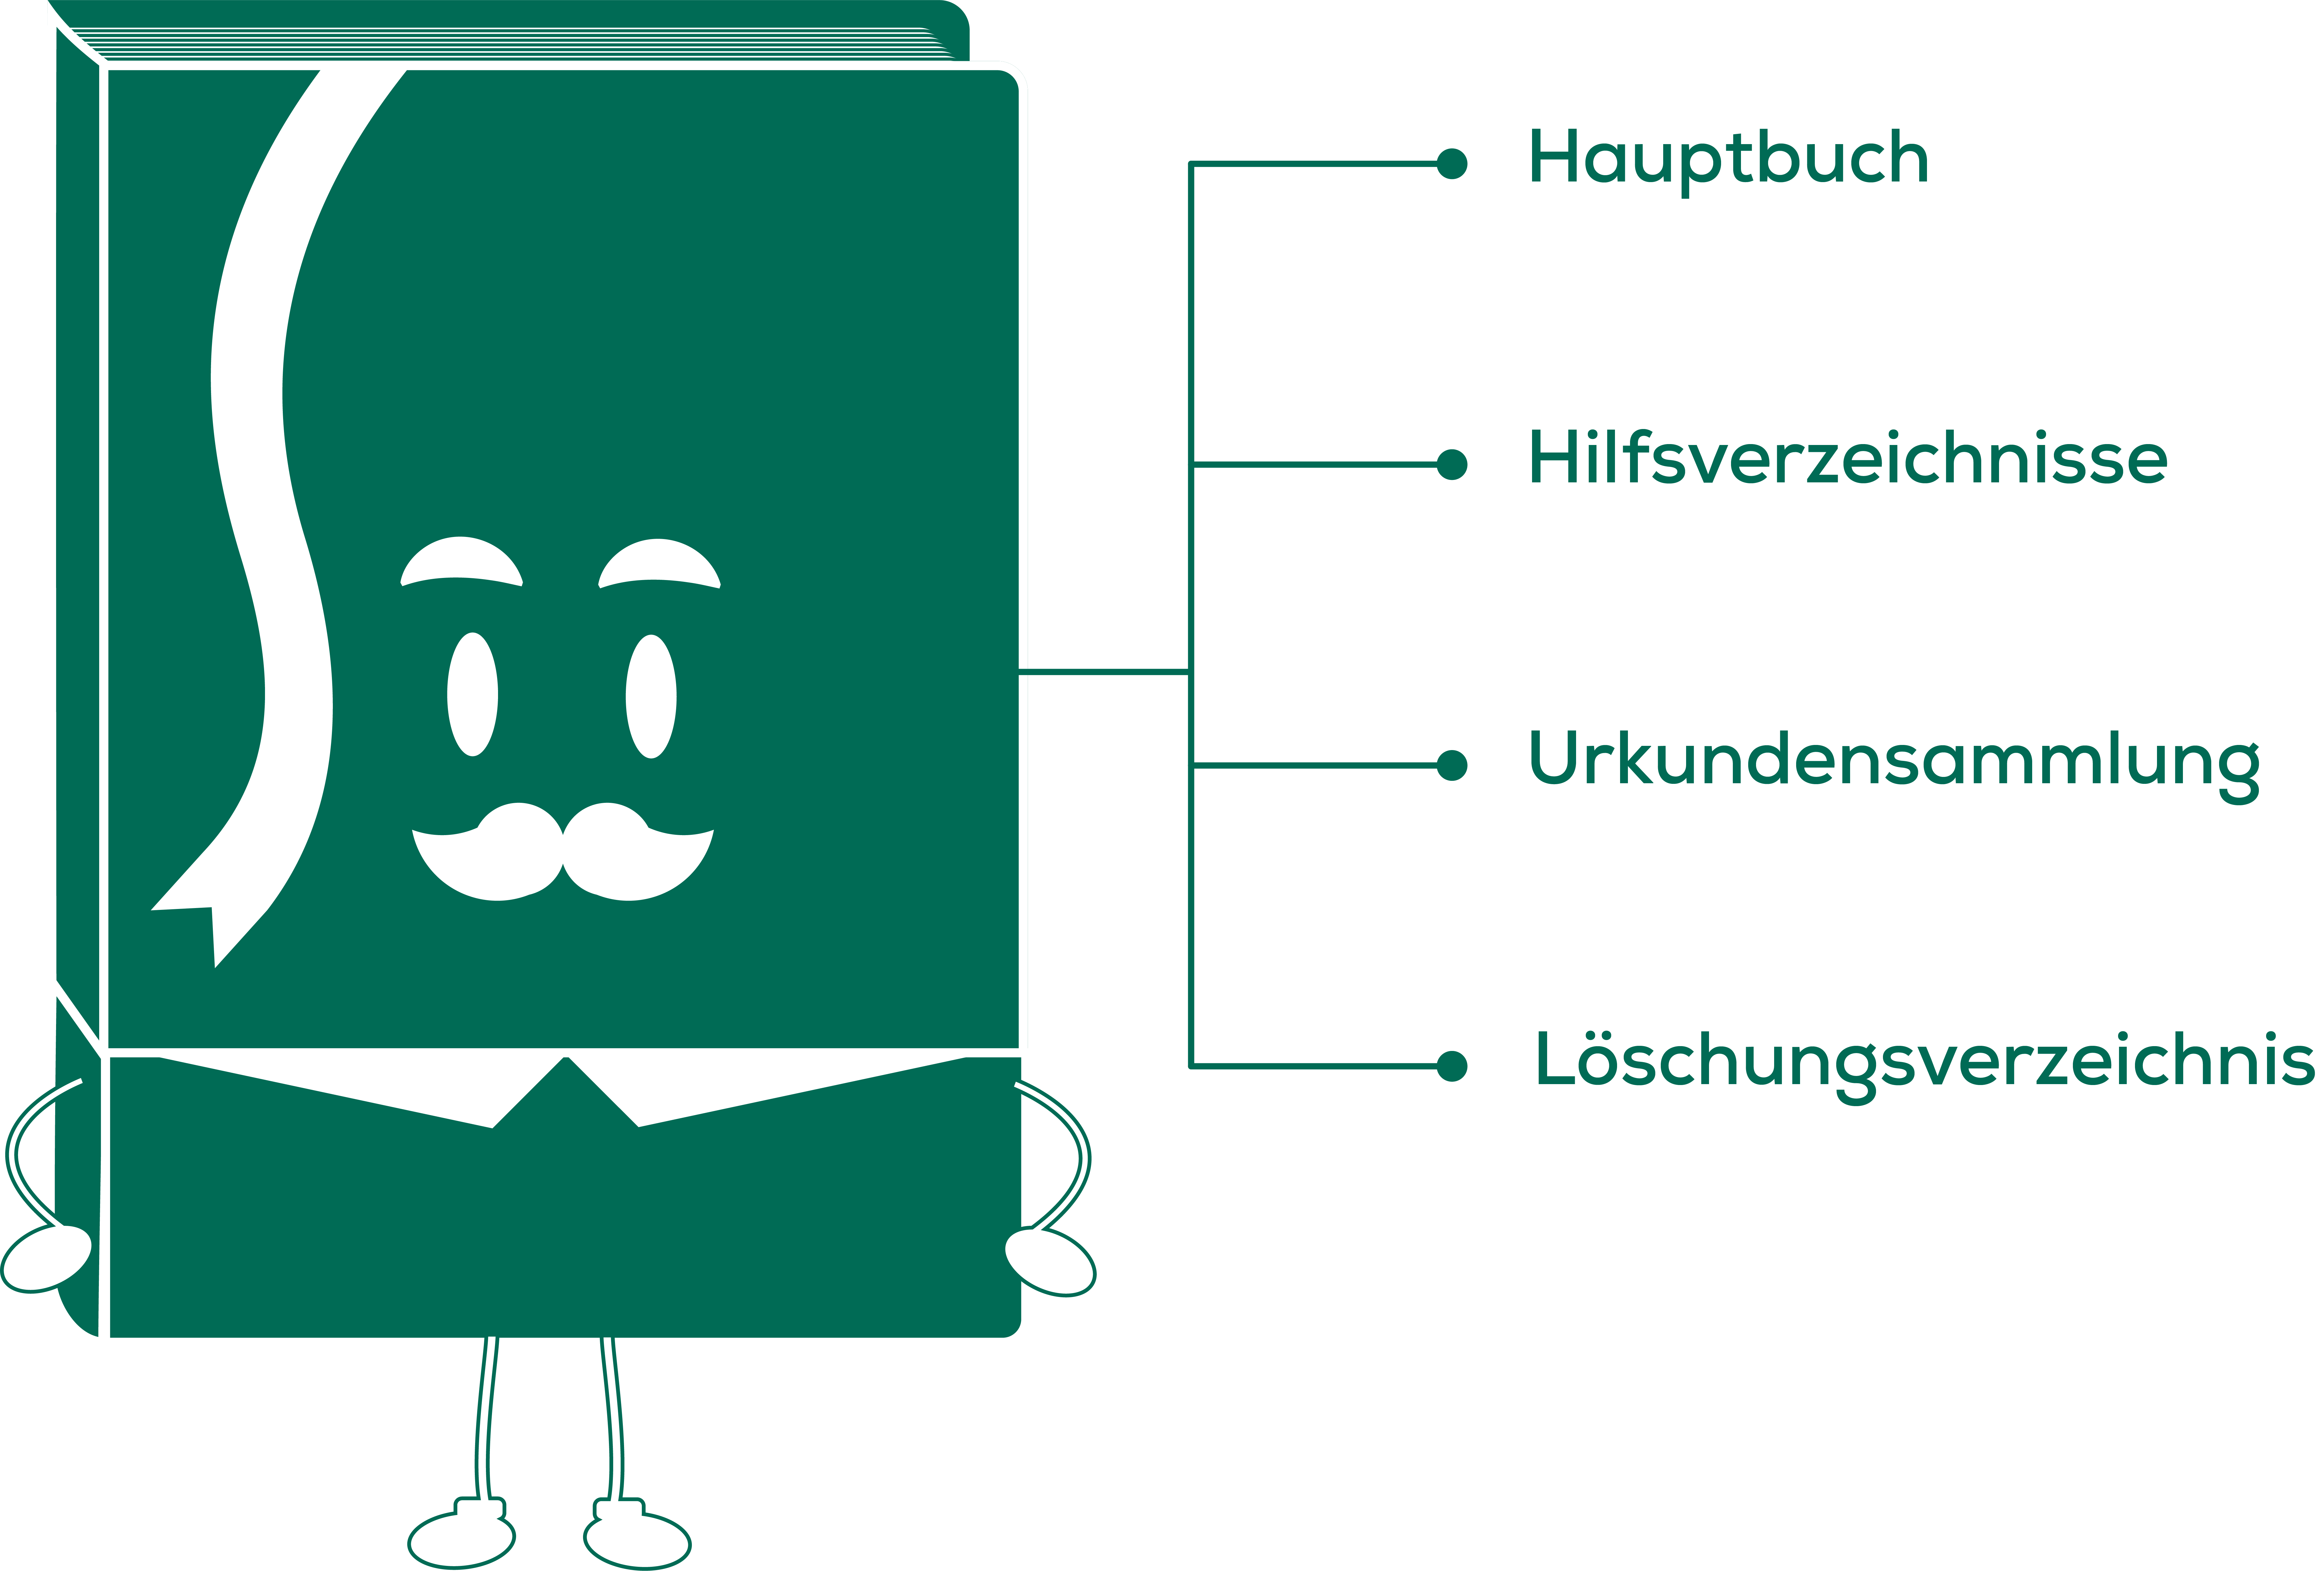 IMMOunited Ratgeber: Wie ist das Grundbuch aufgebaut? Das Österreichische Grundbuch besteht aus dem Hauptbuch, diversen Hilfsverzeichnissen, der Urkundensammlung und einem rechtlich gleichgestellten Löschungsverzeichnis.